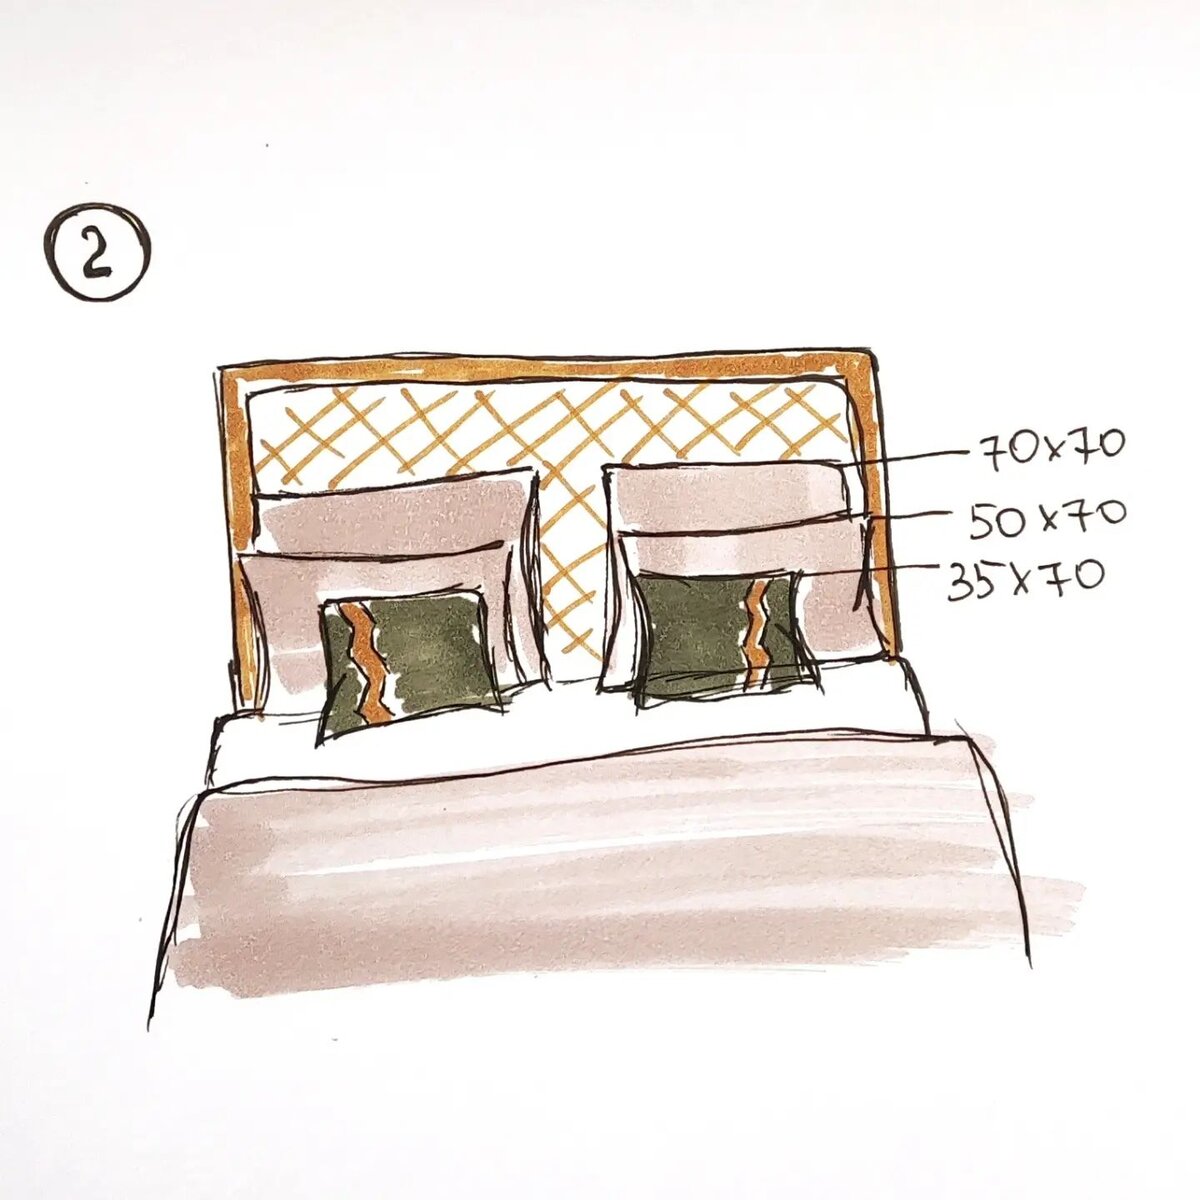 Как оформить кровать в спальне